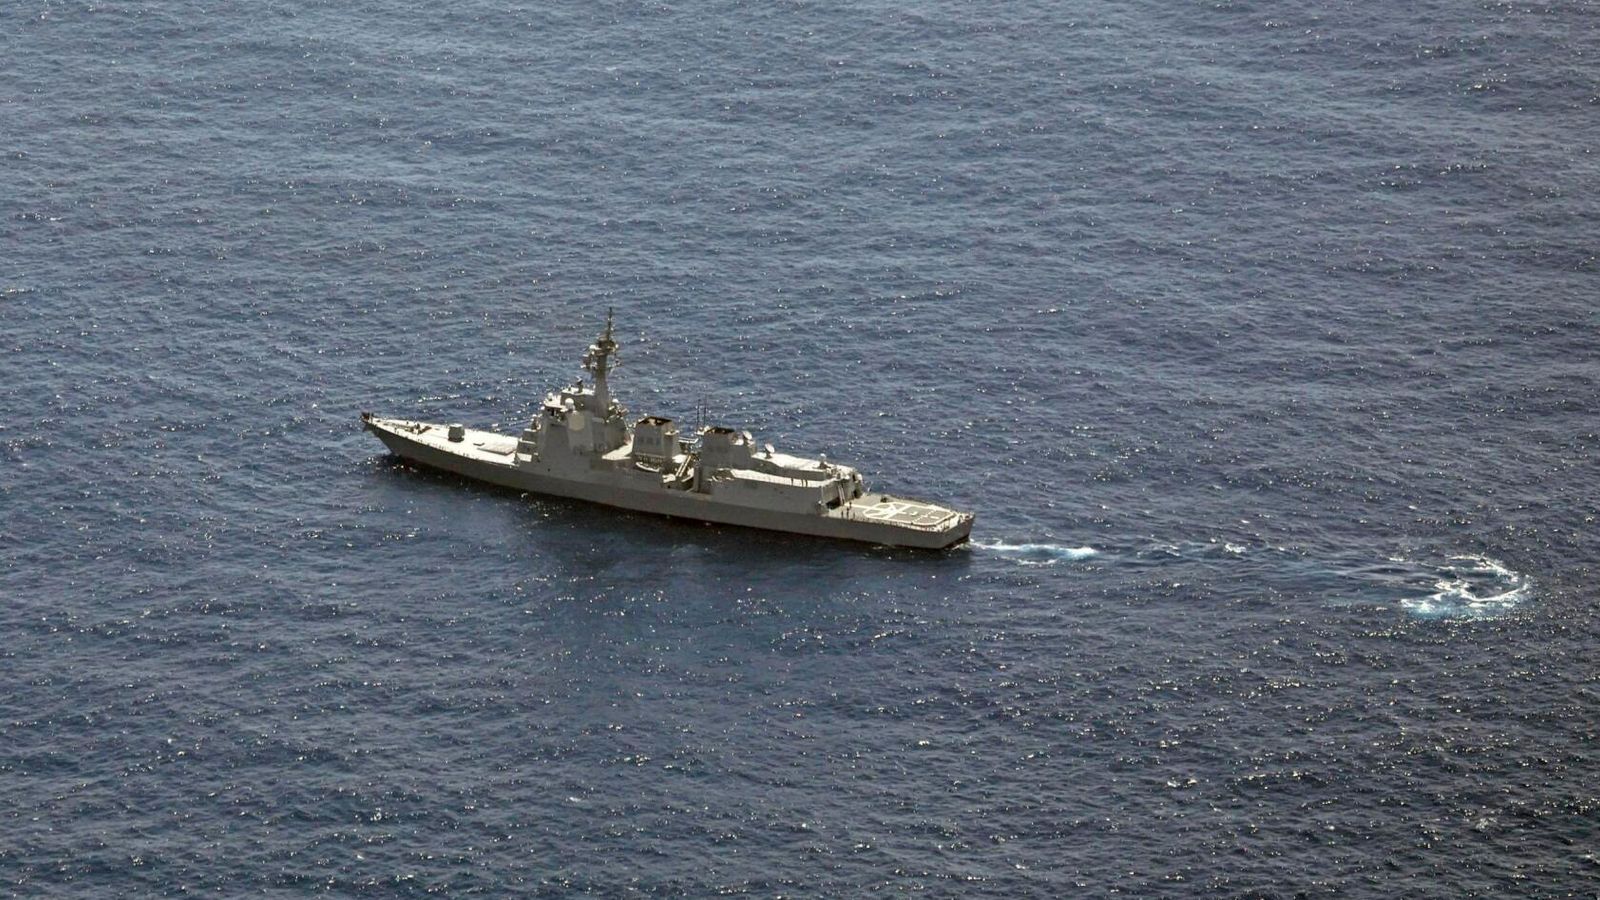 Един загинал и седем изчезнали, след като два хеликоптера на японския флот се разбиха в океана